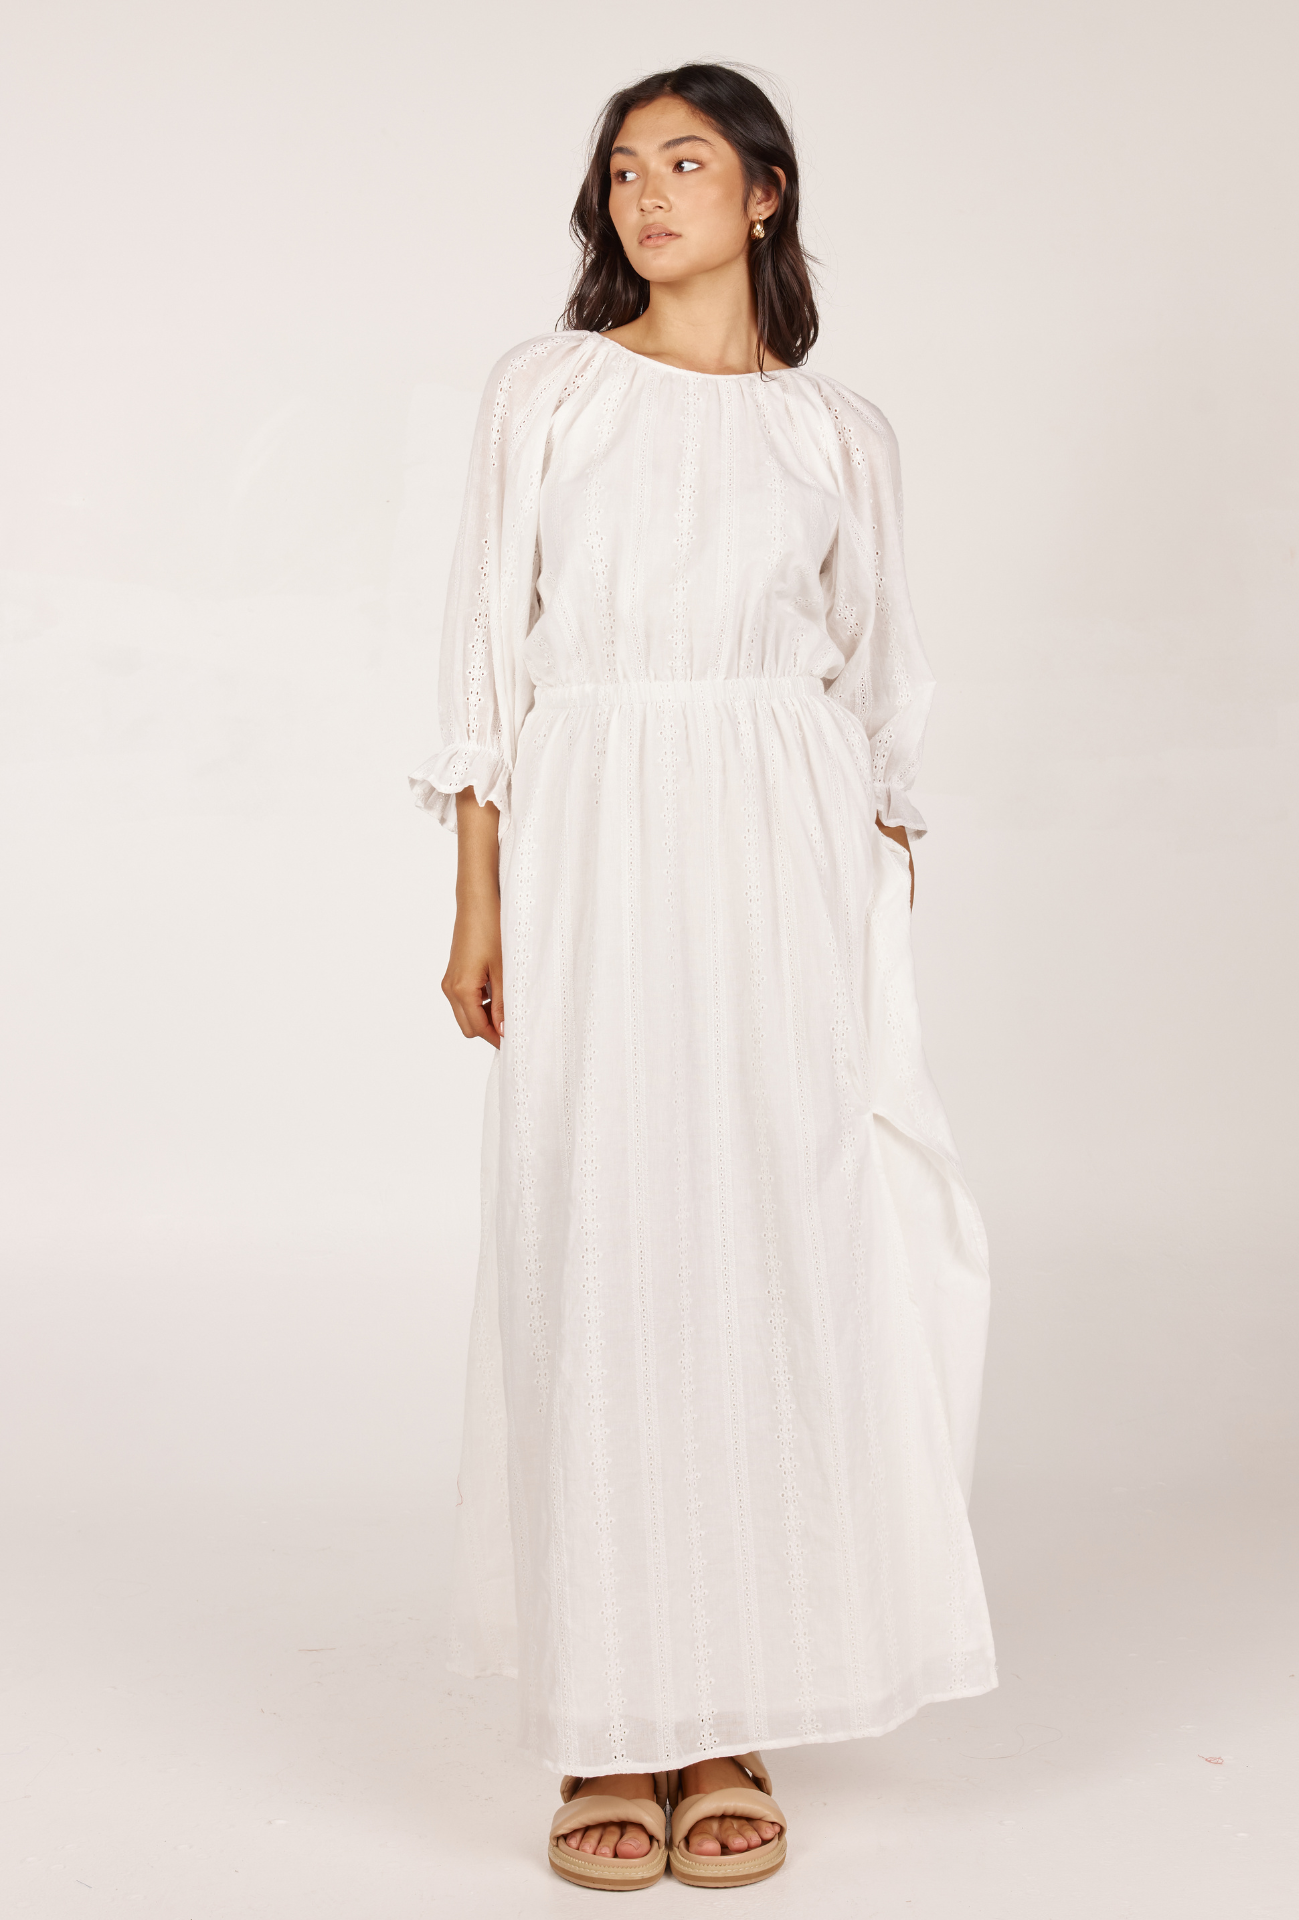 MARINE MAXI DRESS  - WHITE EYELET